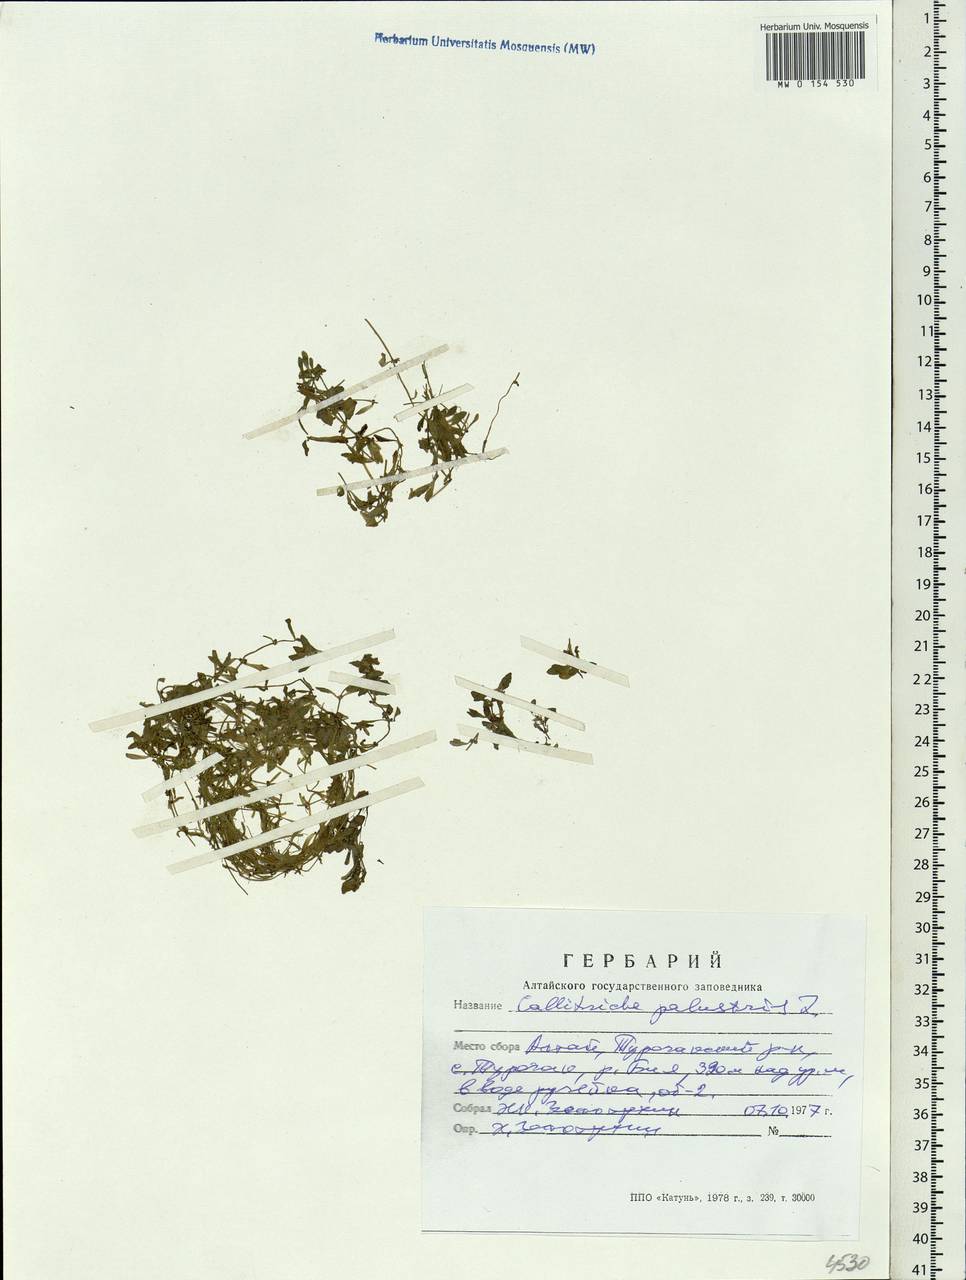 Callitriche palustris L., Siberia, Altai & Sayany Mountains (S2) (Russia)